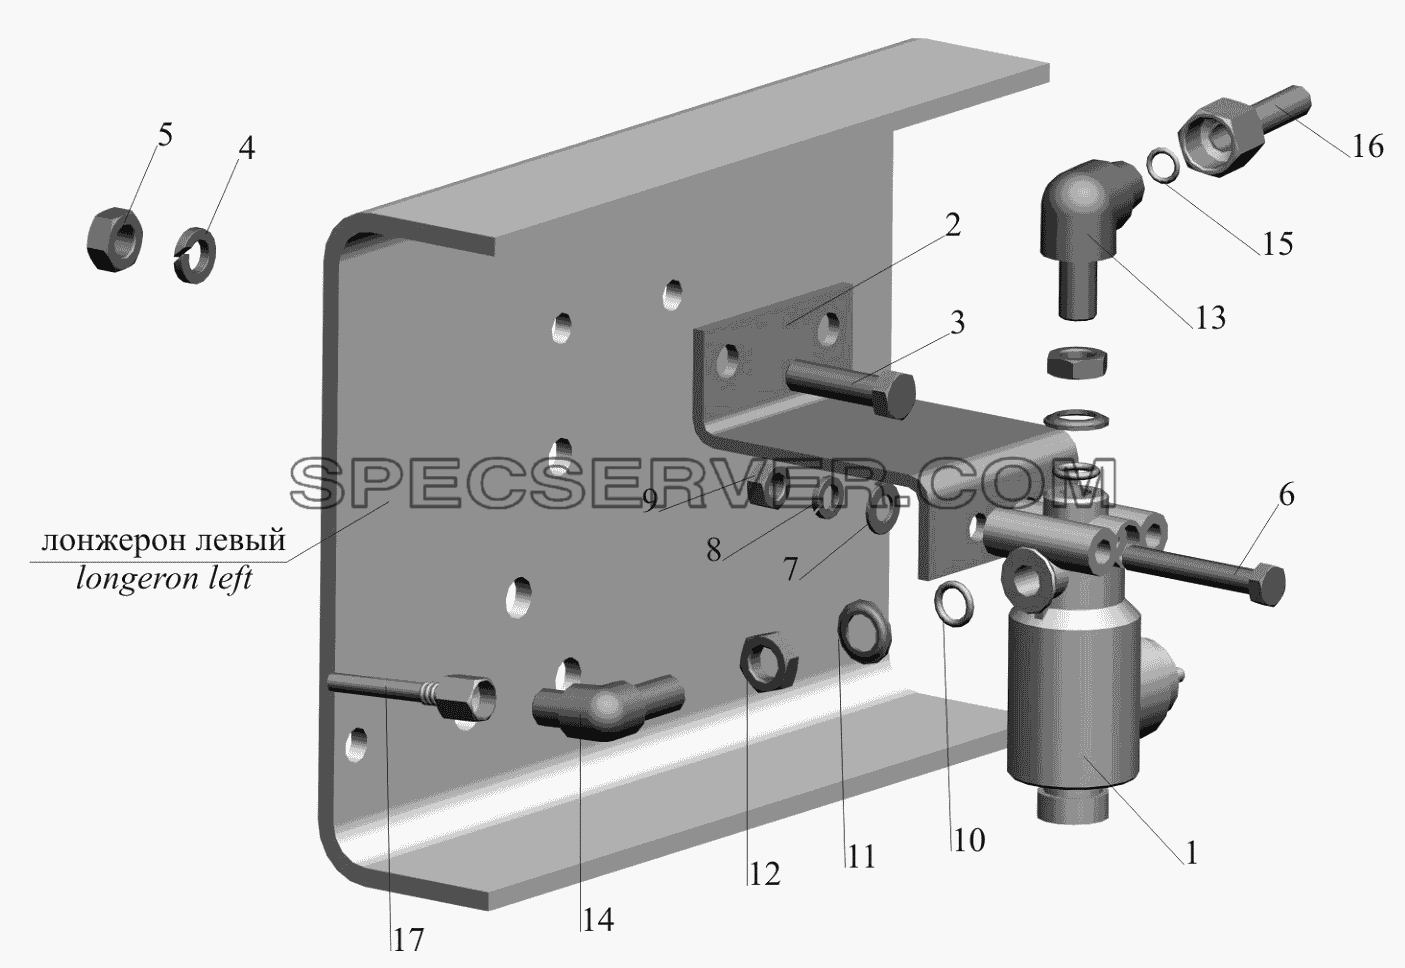 Установка тормозного клапана ASR и присоединительной арматуры для МАЗ-650119 (список запасных частей)